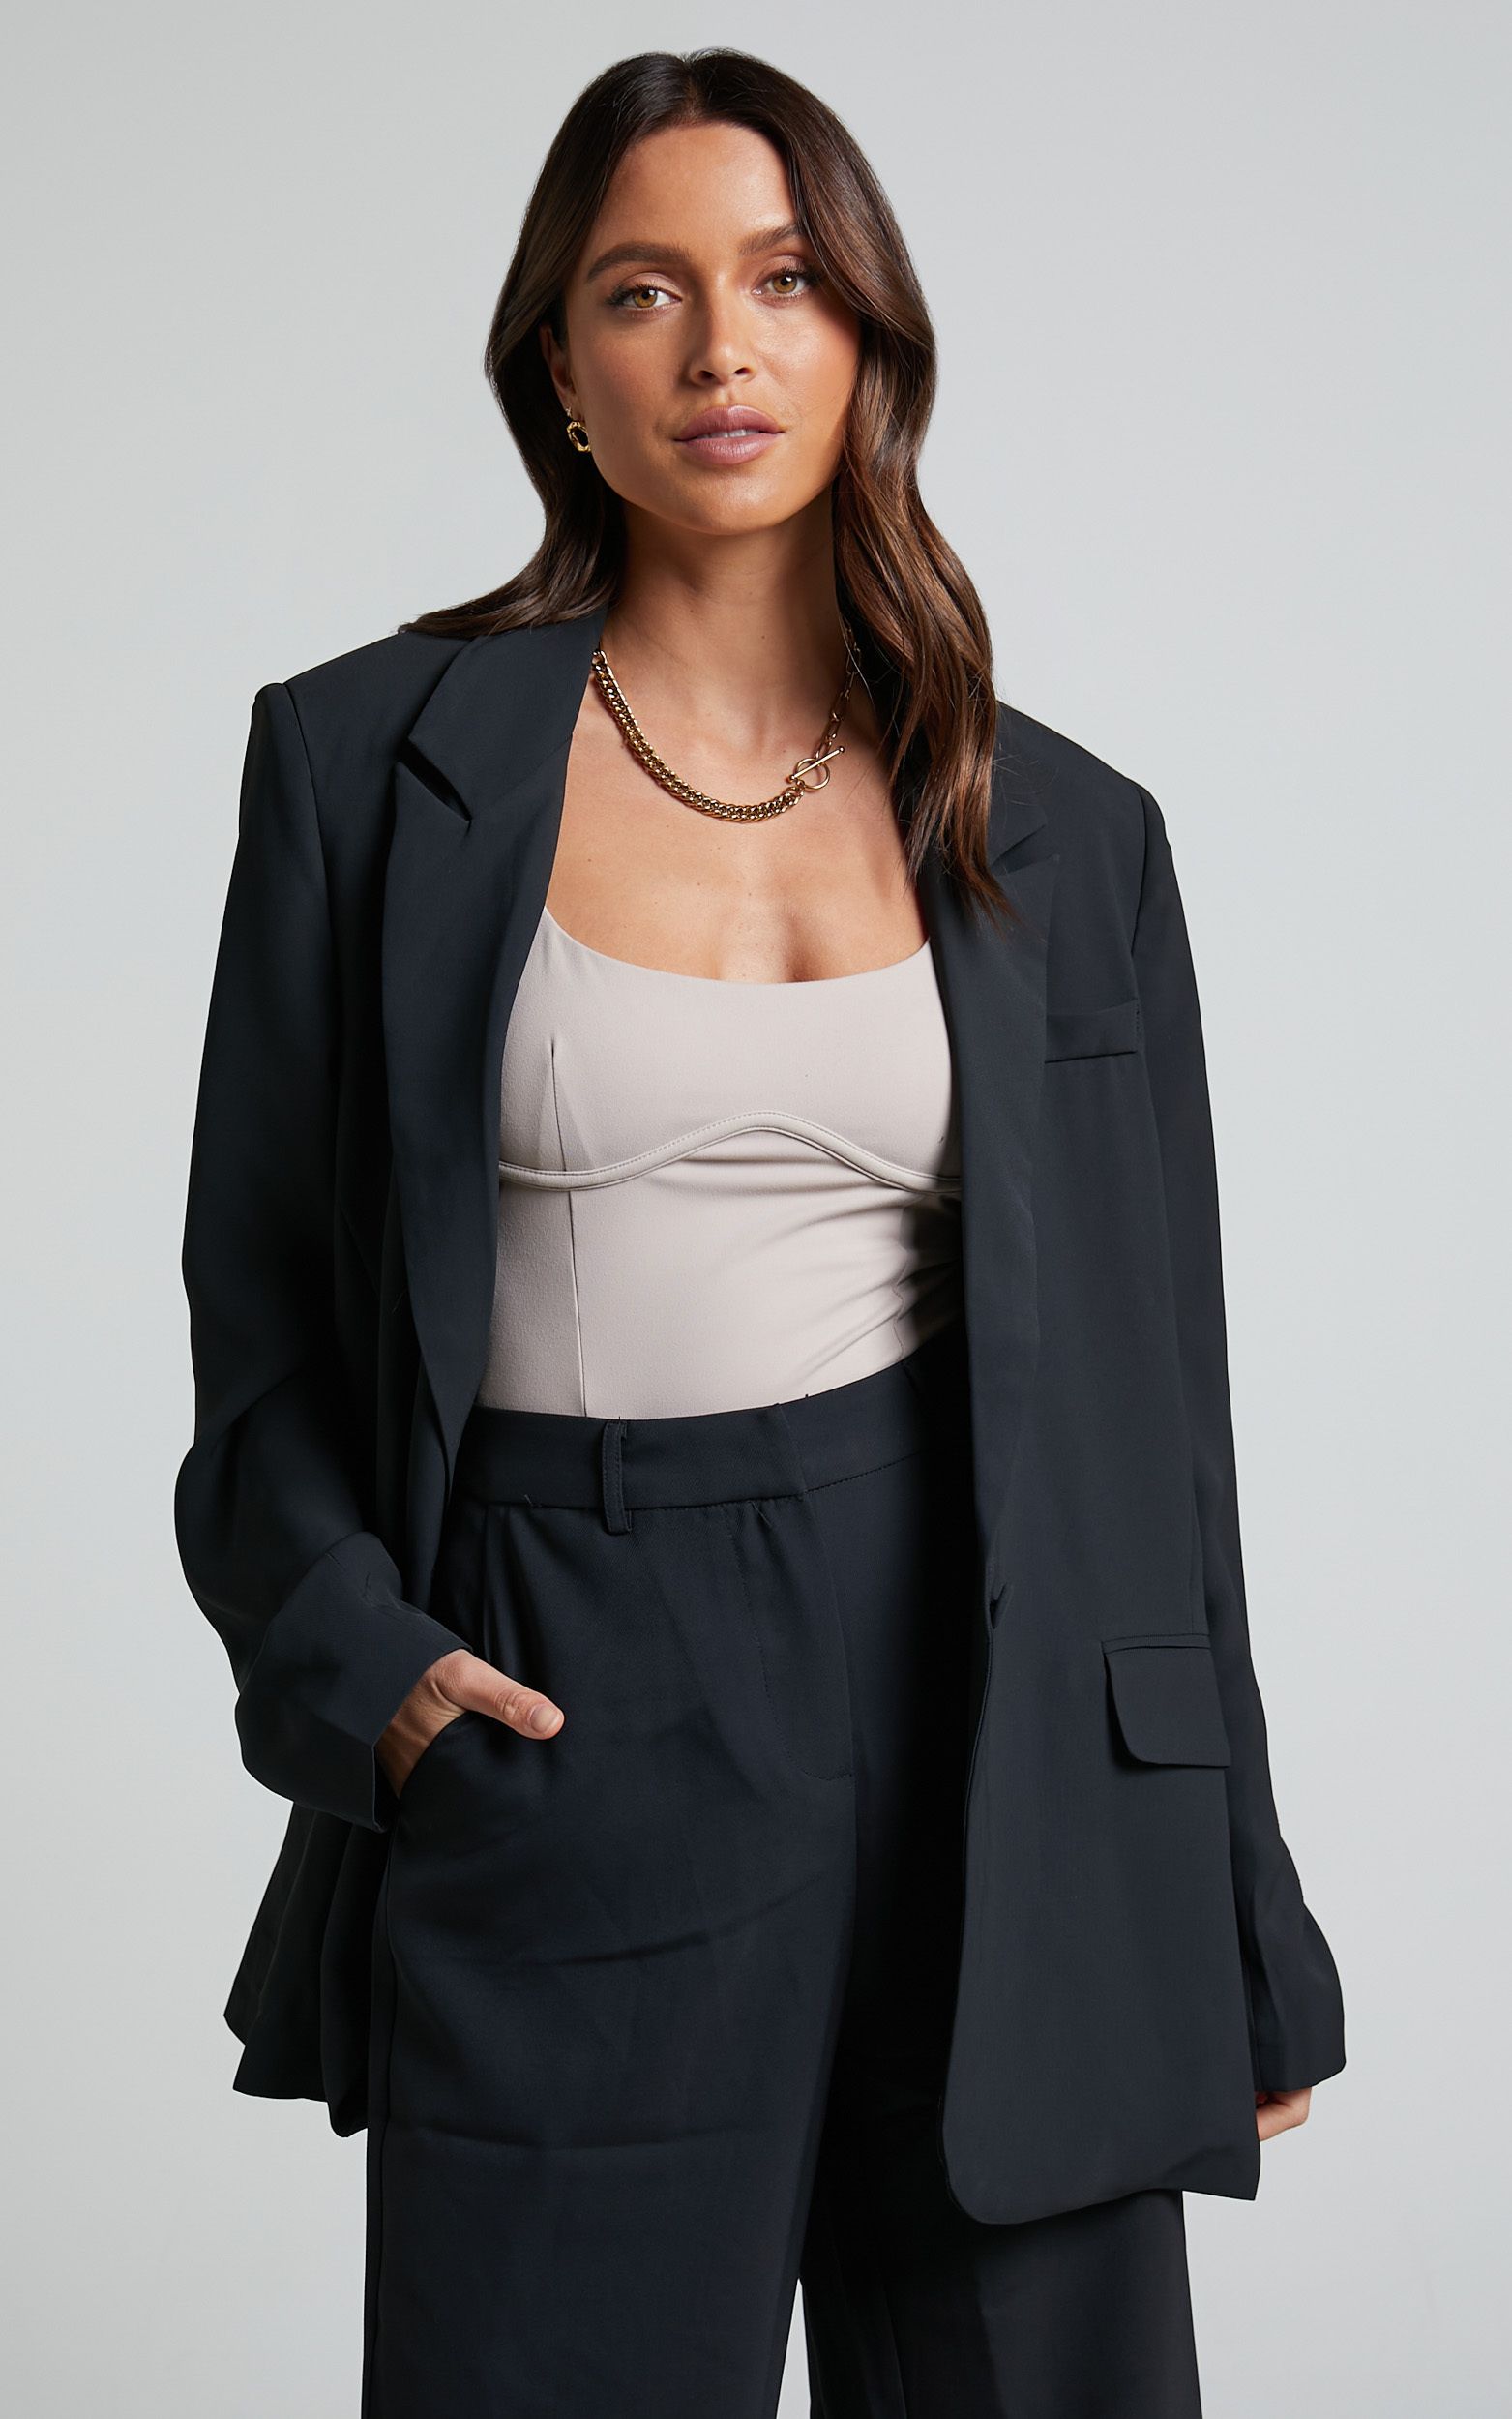 Michelle Oversized Plunge Neck Button Up Blazer in Black | Showpo (US, UK & Europe)